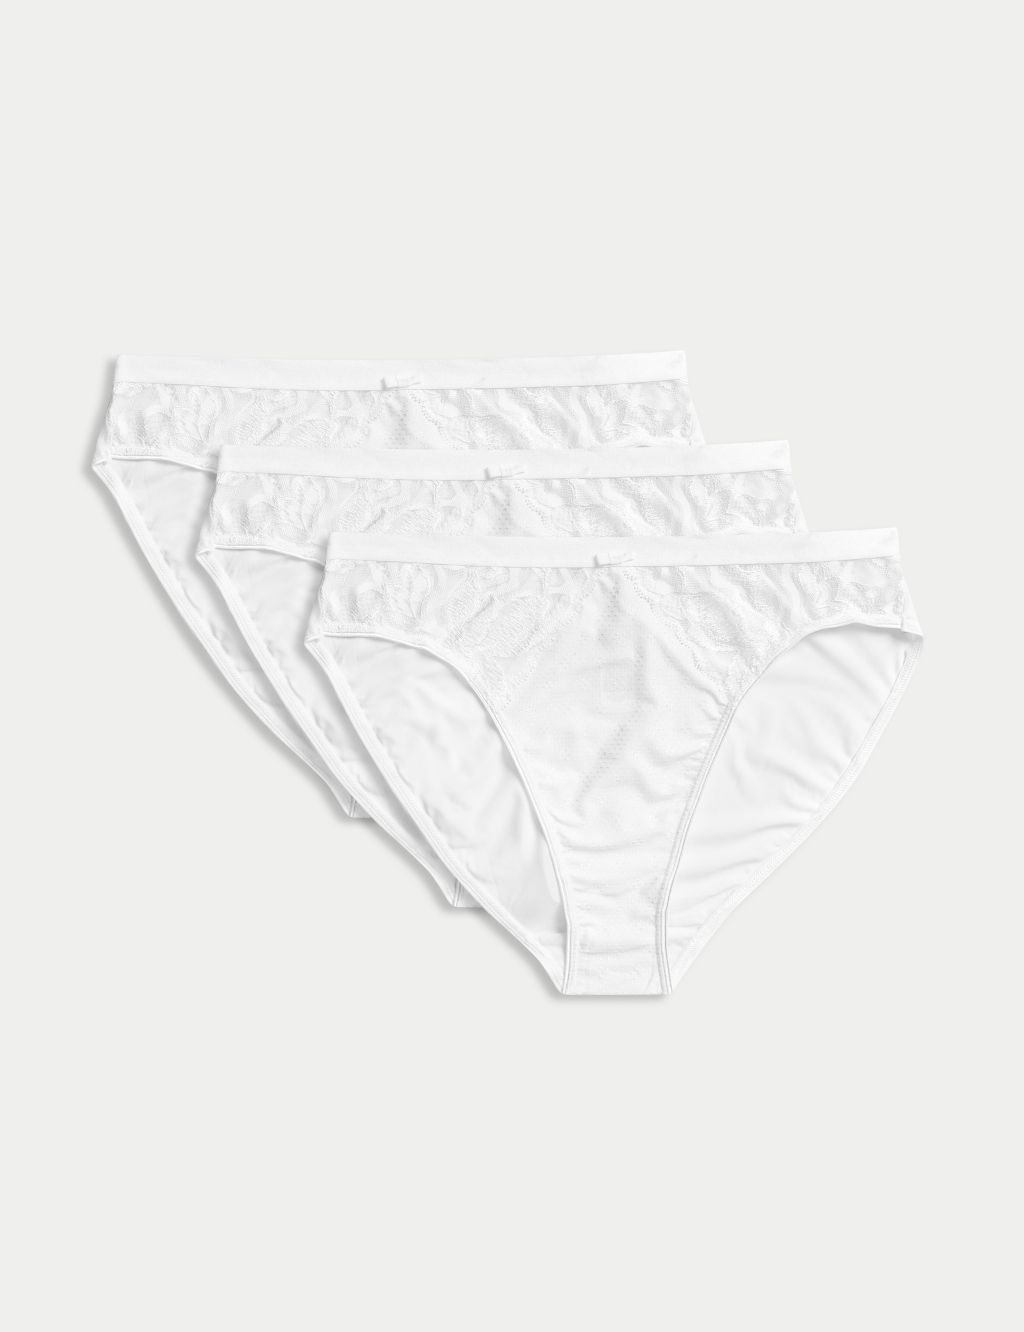 Assurance Womens (Fresh Lavender Color) Underwear, 2xl, 14 Count